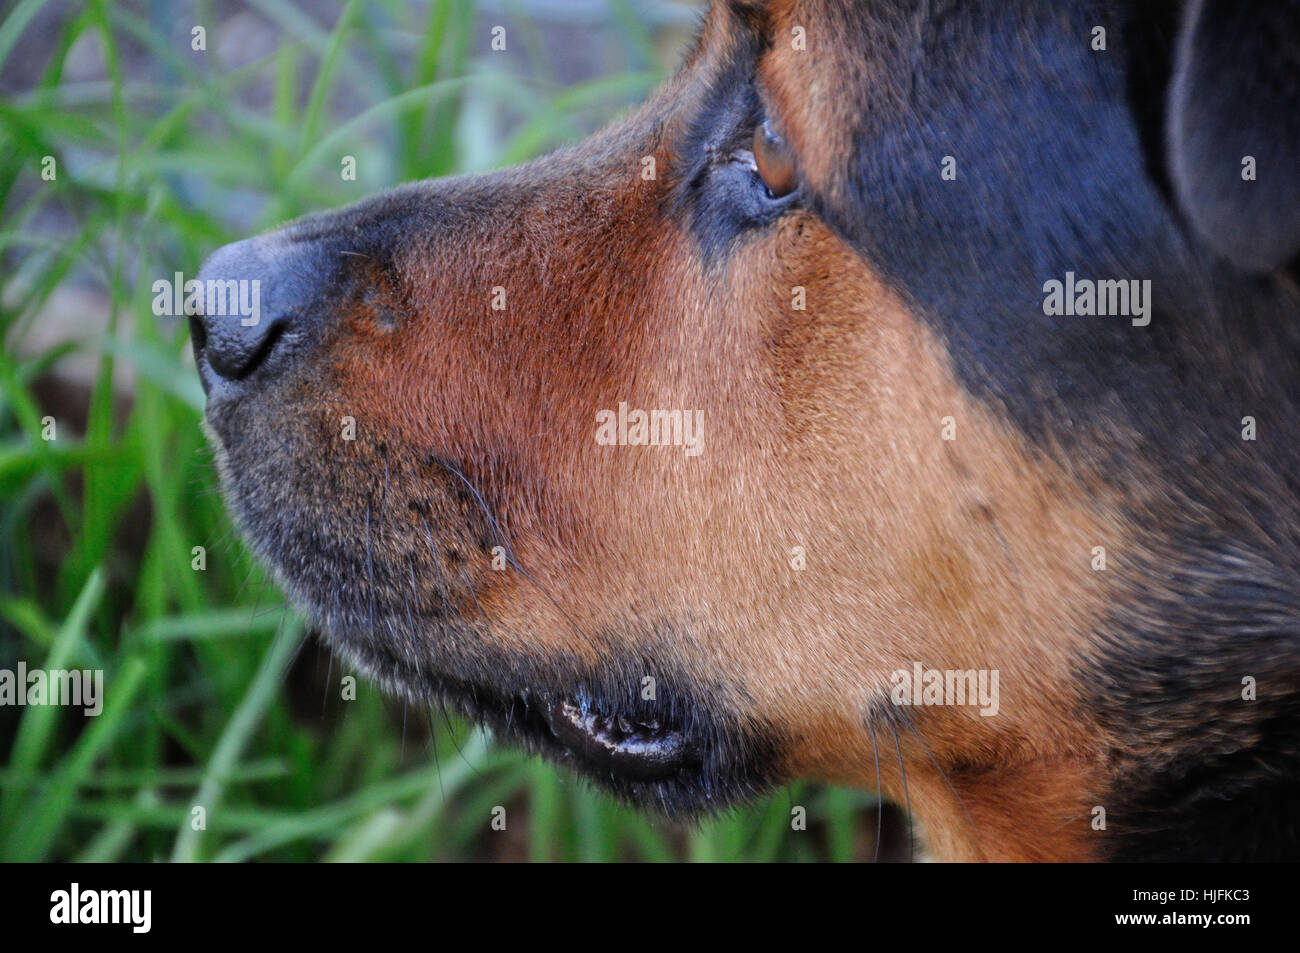 Dog Profile 1 Stock Photo